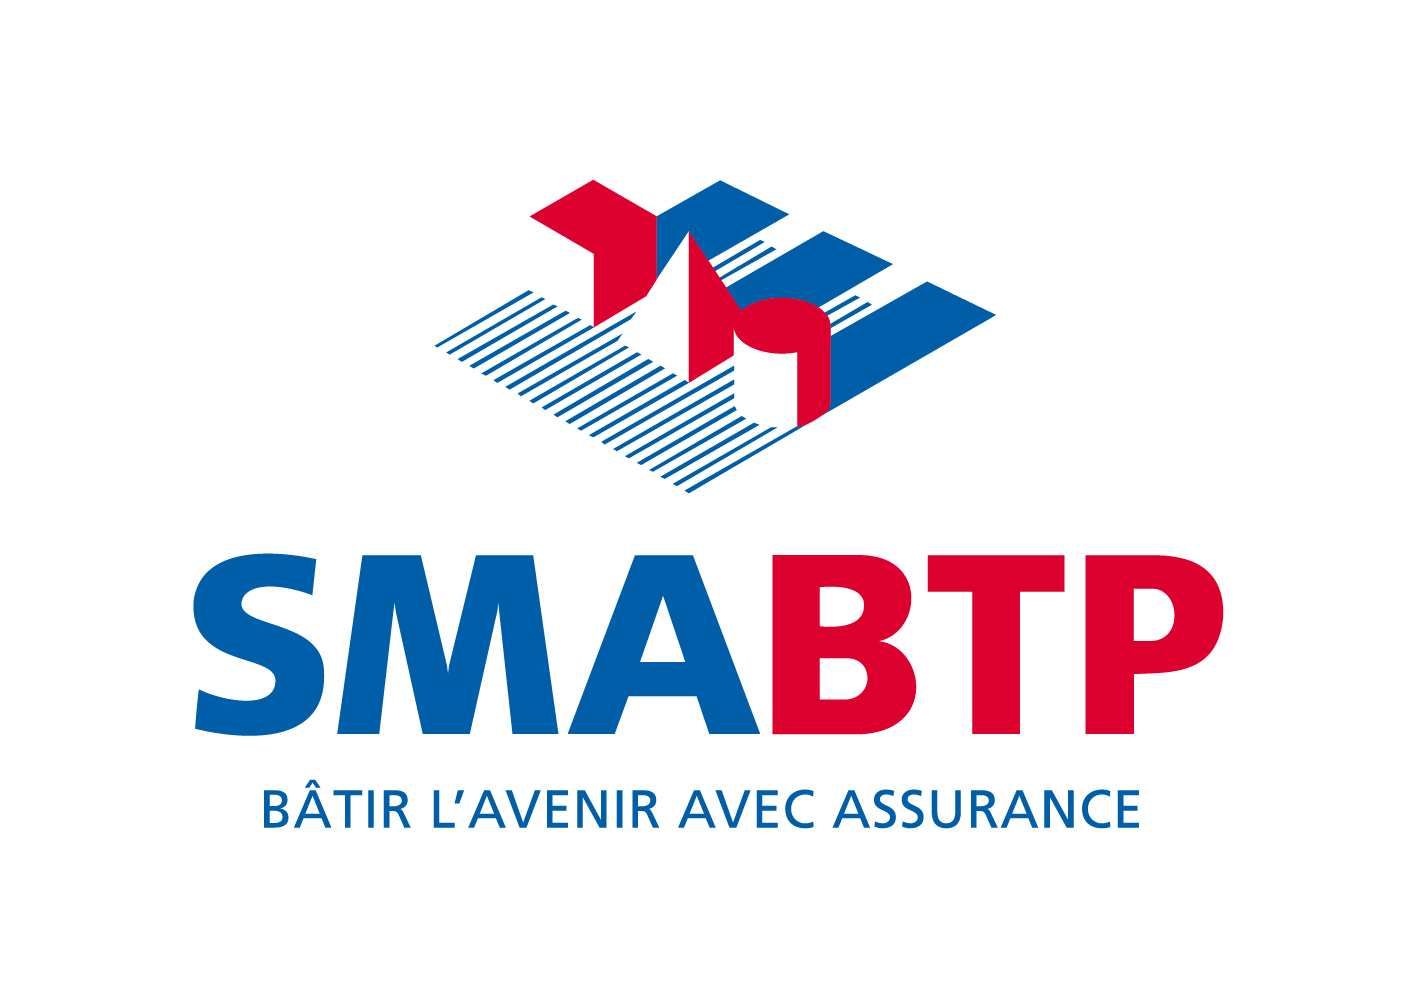 Bureau d'études thermiques et d'audit énergétique assurée par la SMABTP